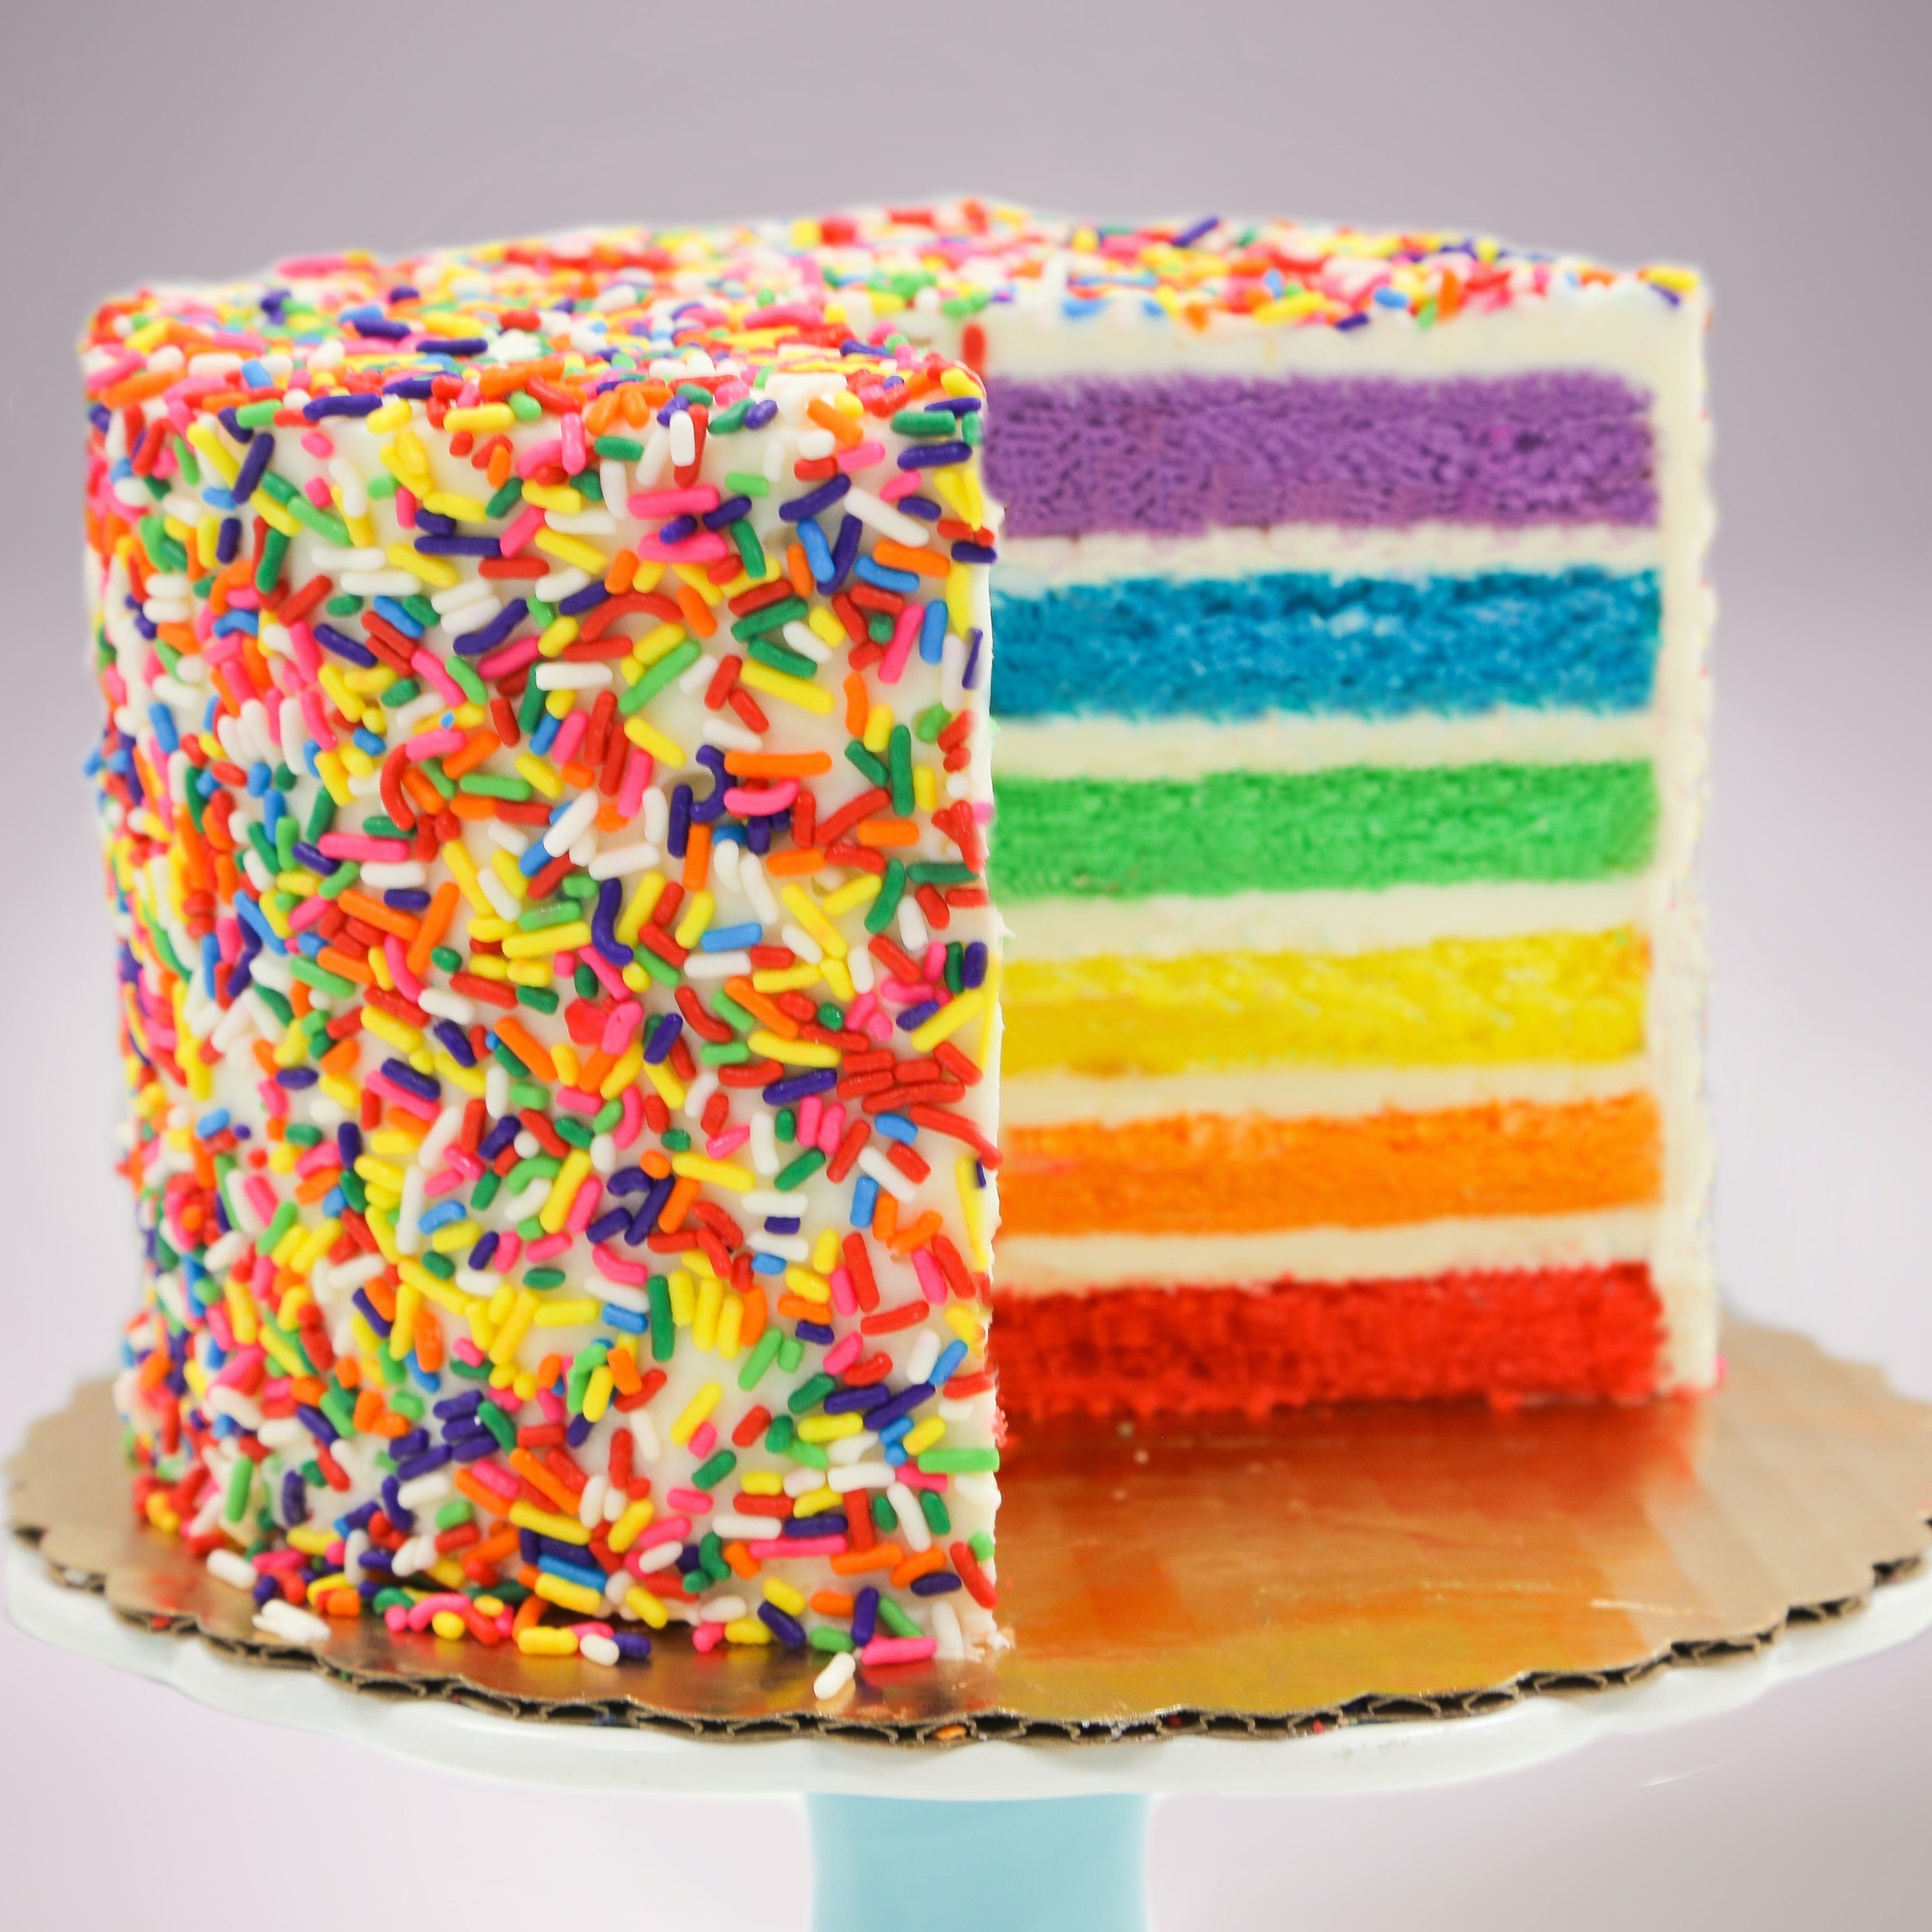 rainbow-sprinkled蛋糕分层不同的彩虹色